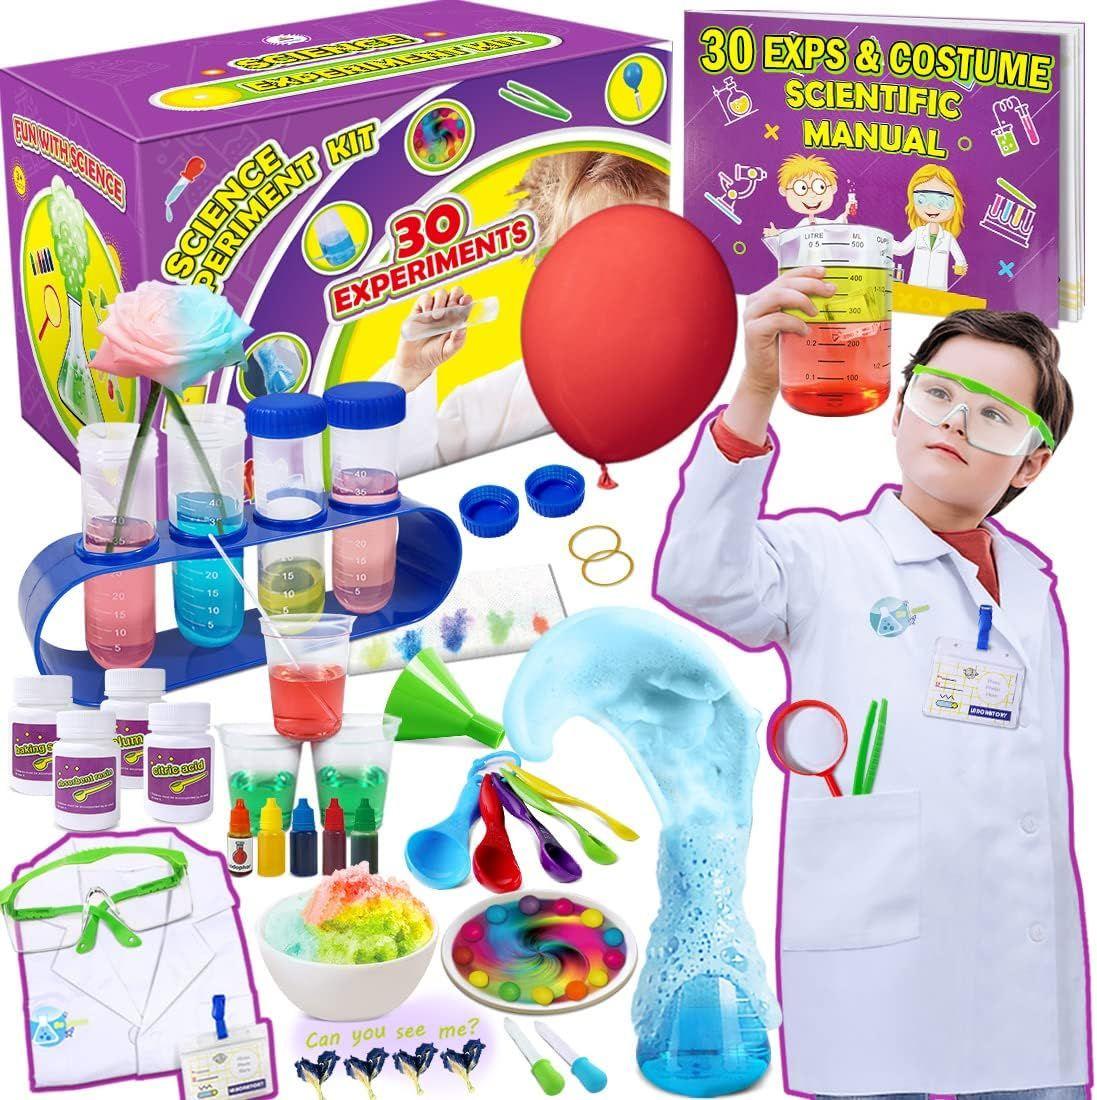 Leader des jouets éducatifs et scientifiques pour les enfants